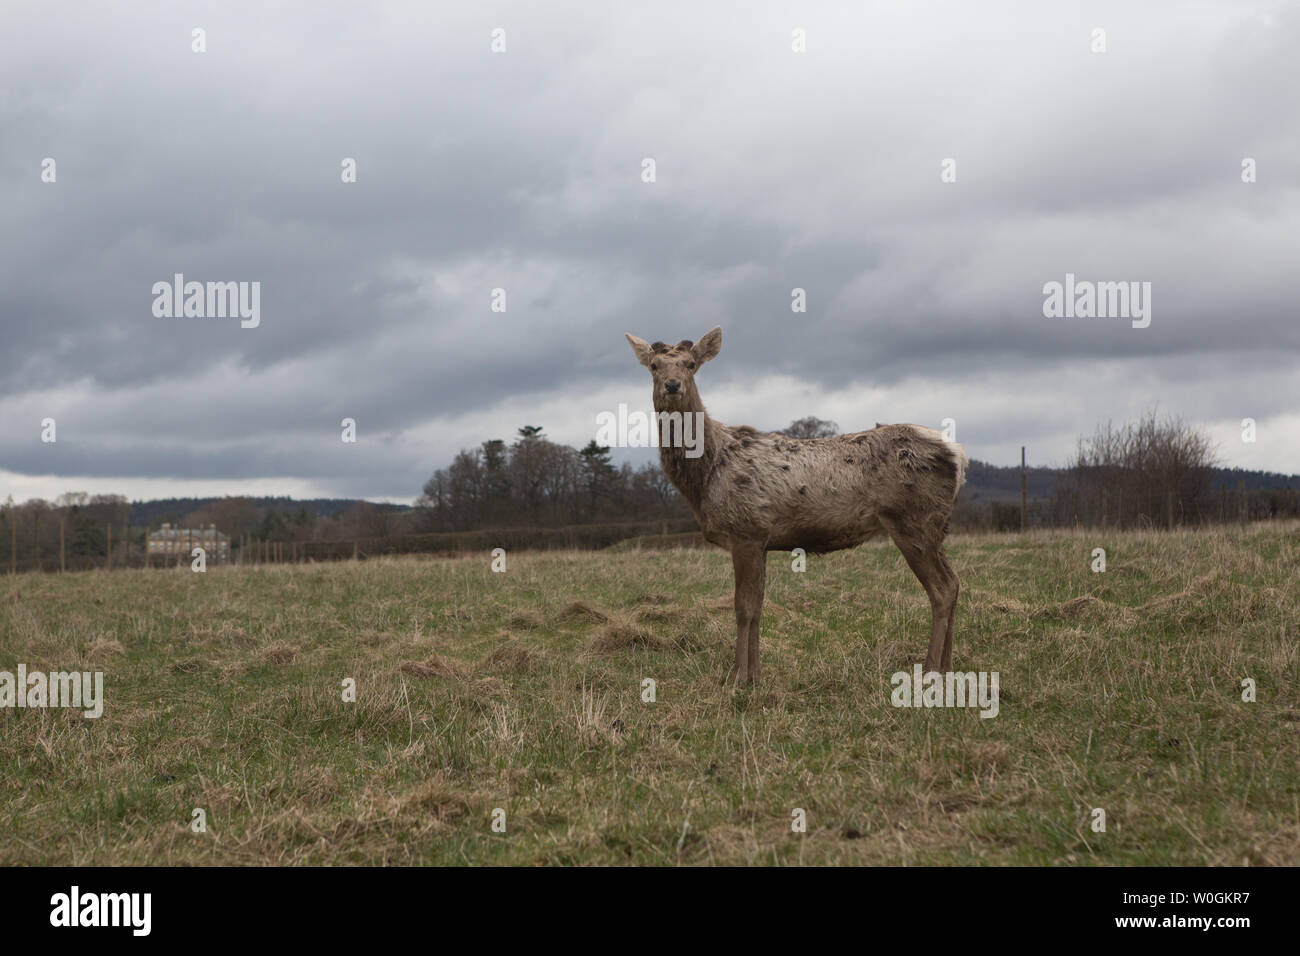 Red deer (Cervus elaphus) at the The Scottish Deer Centre, Bow of Fife, Cupar, Scotland. Stock Photo